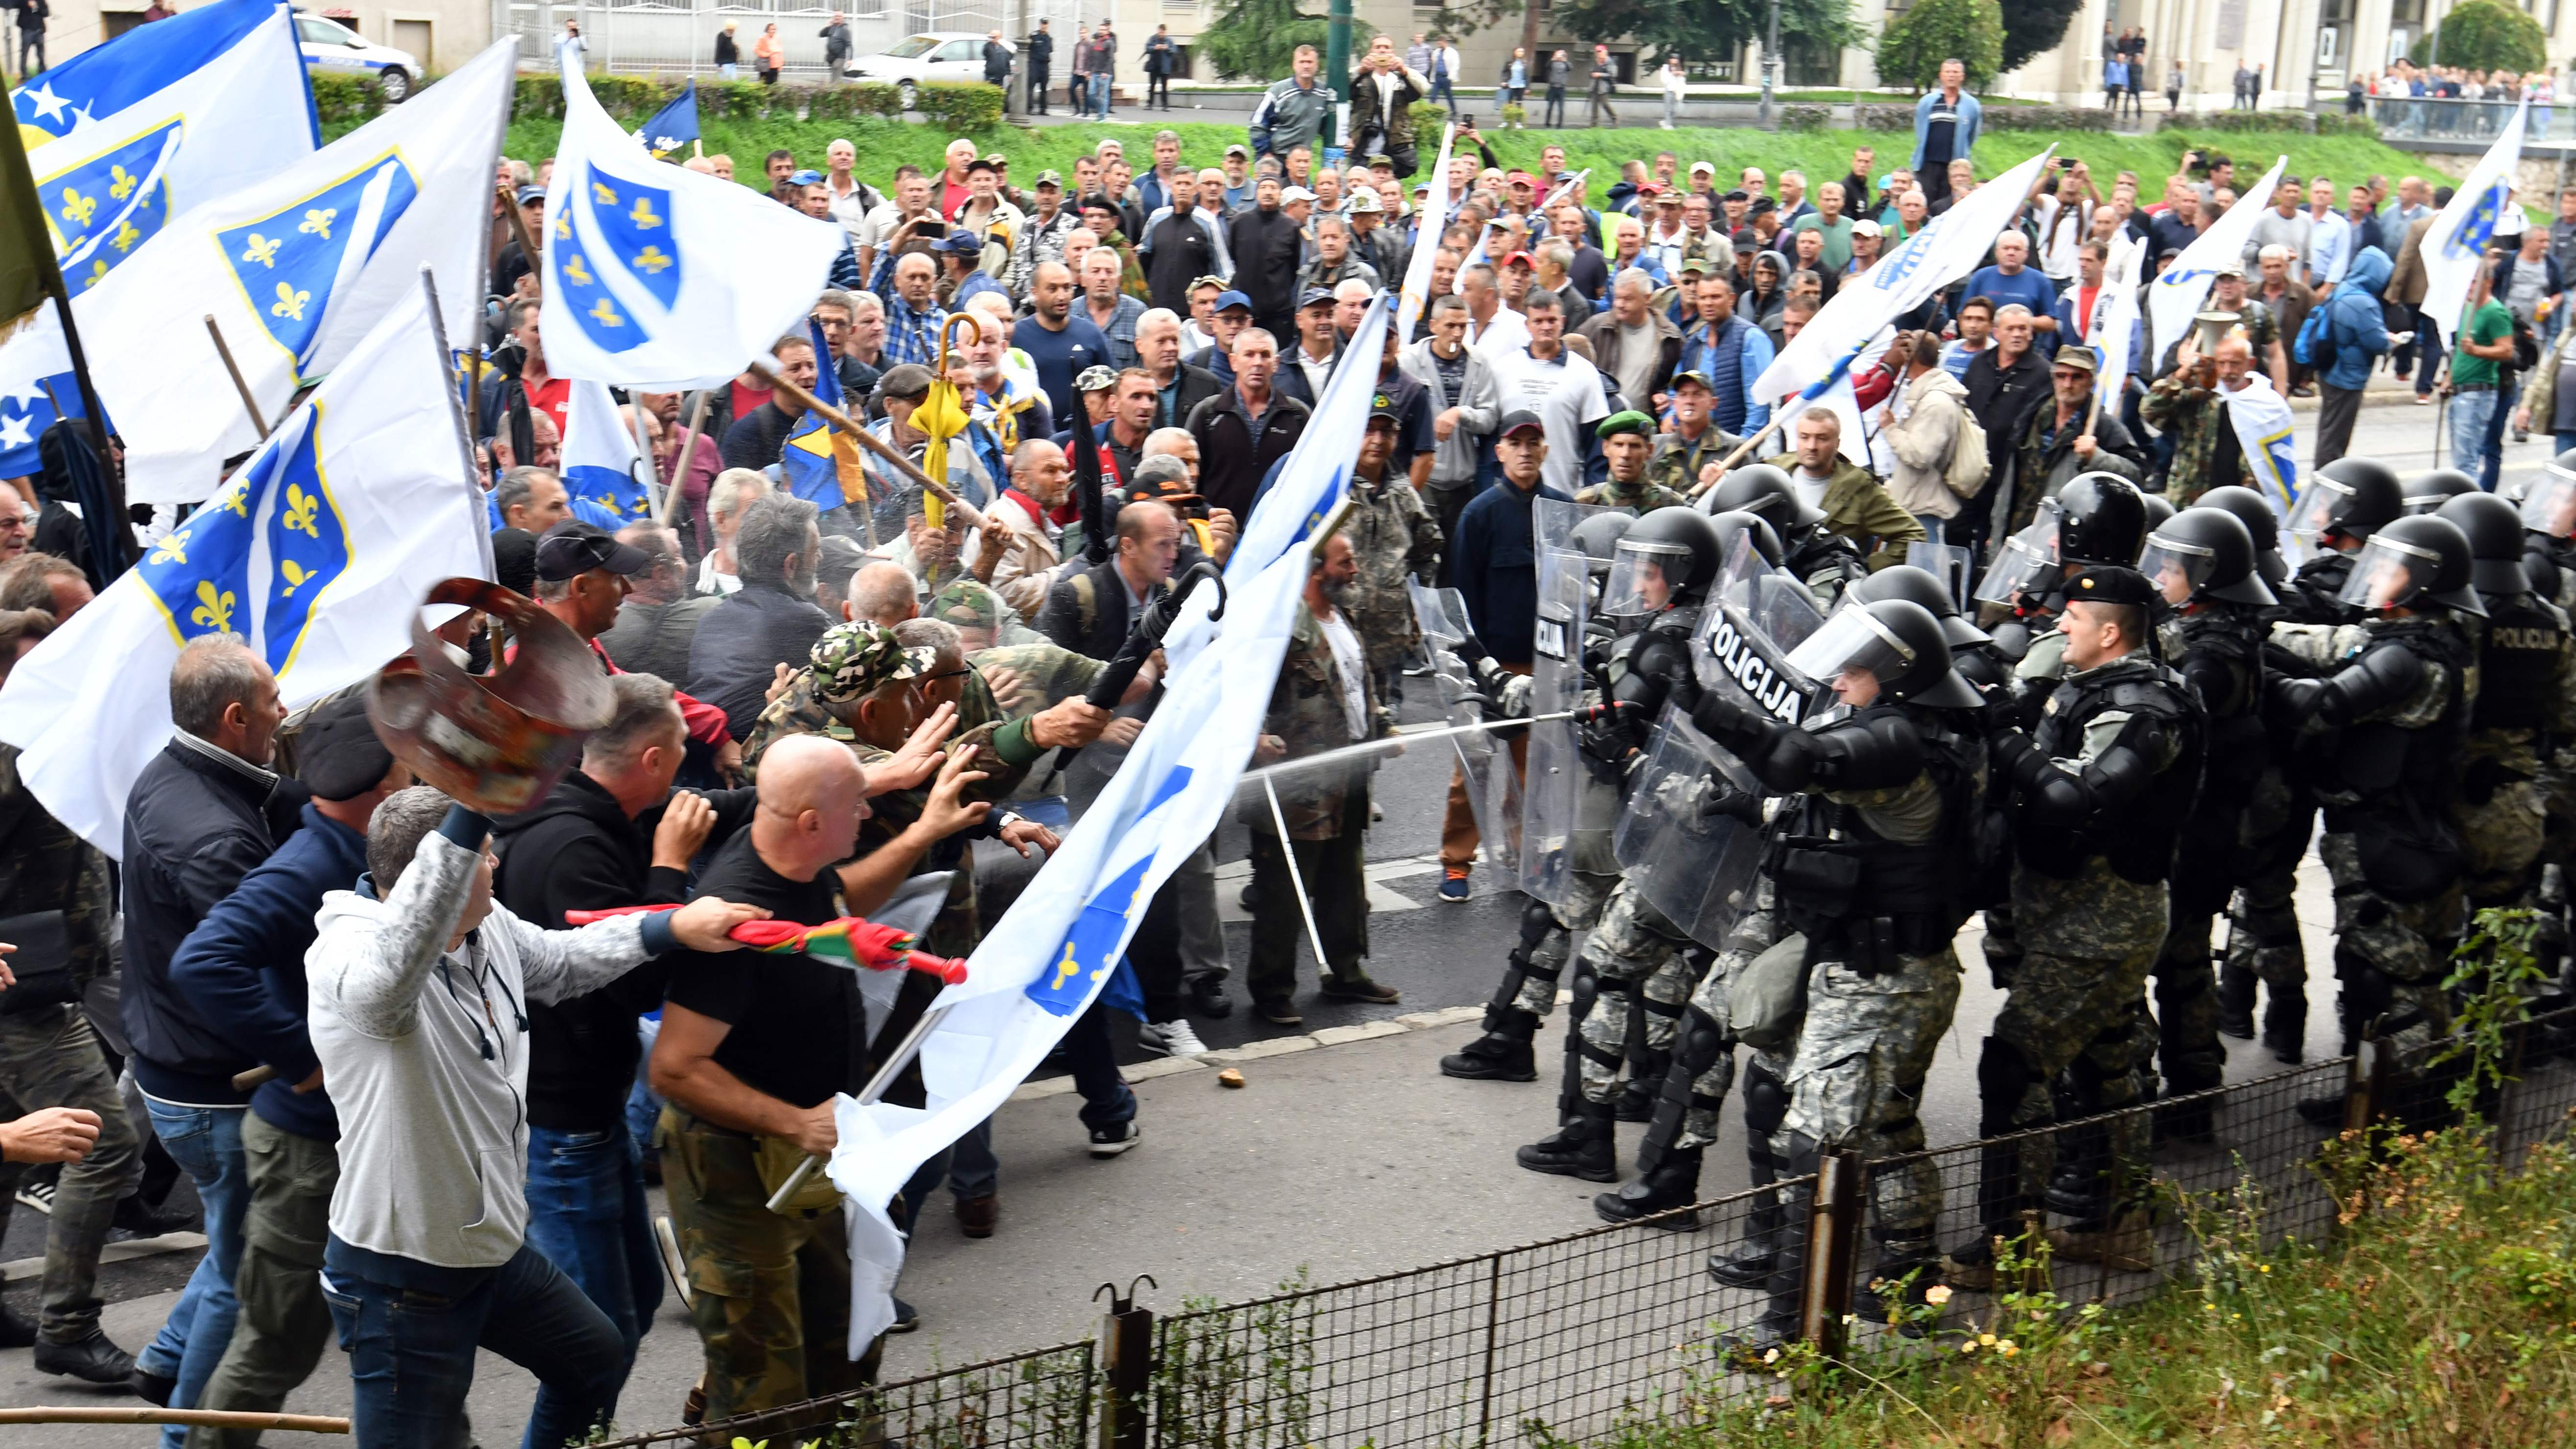 صور.. شرطة البوسنة تشتبك مع مئات من المحاربين القدماء بالعاصمة سراييفو  1464456-البوسنة-(2)